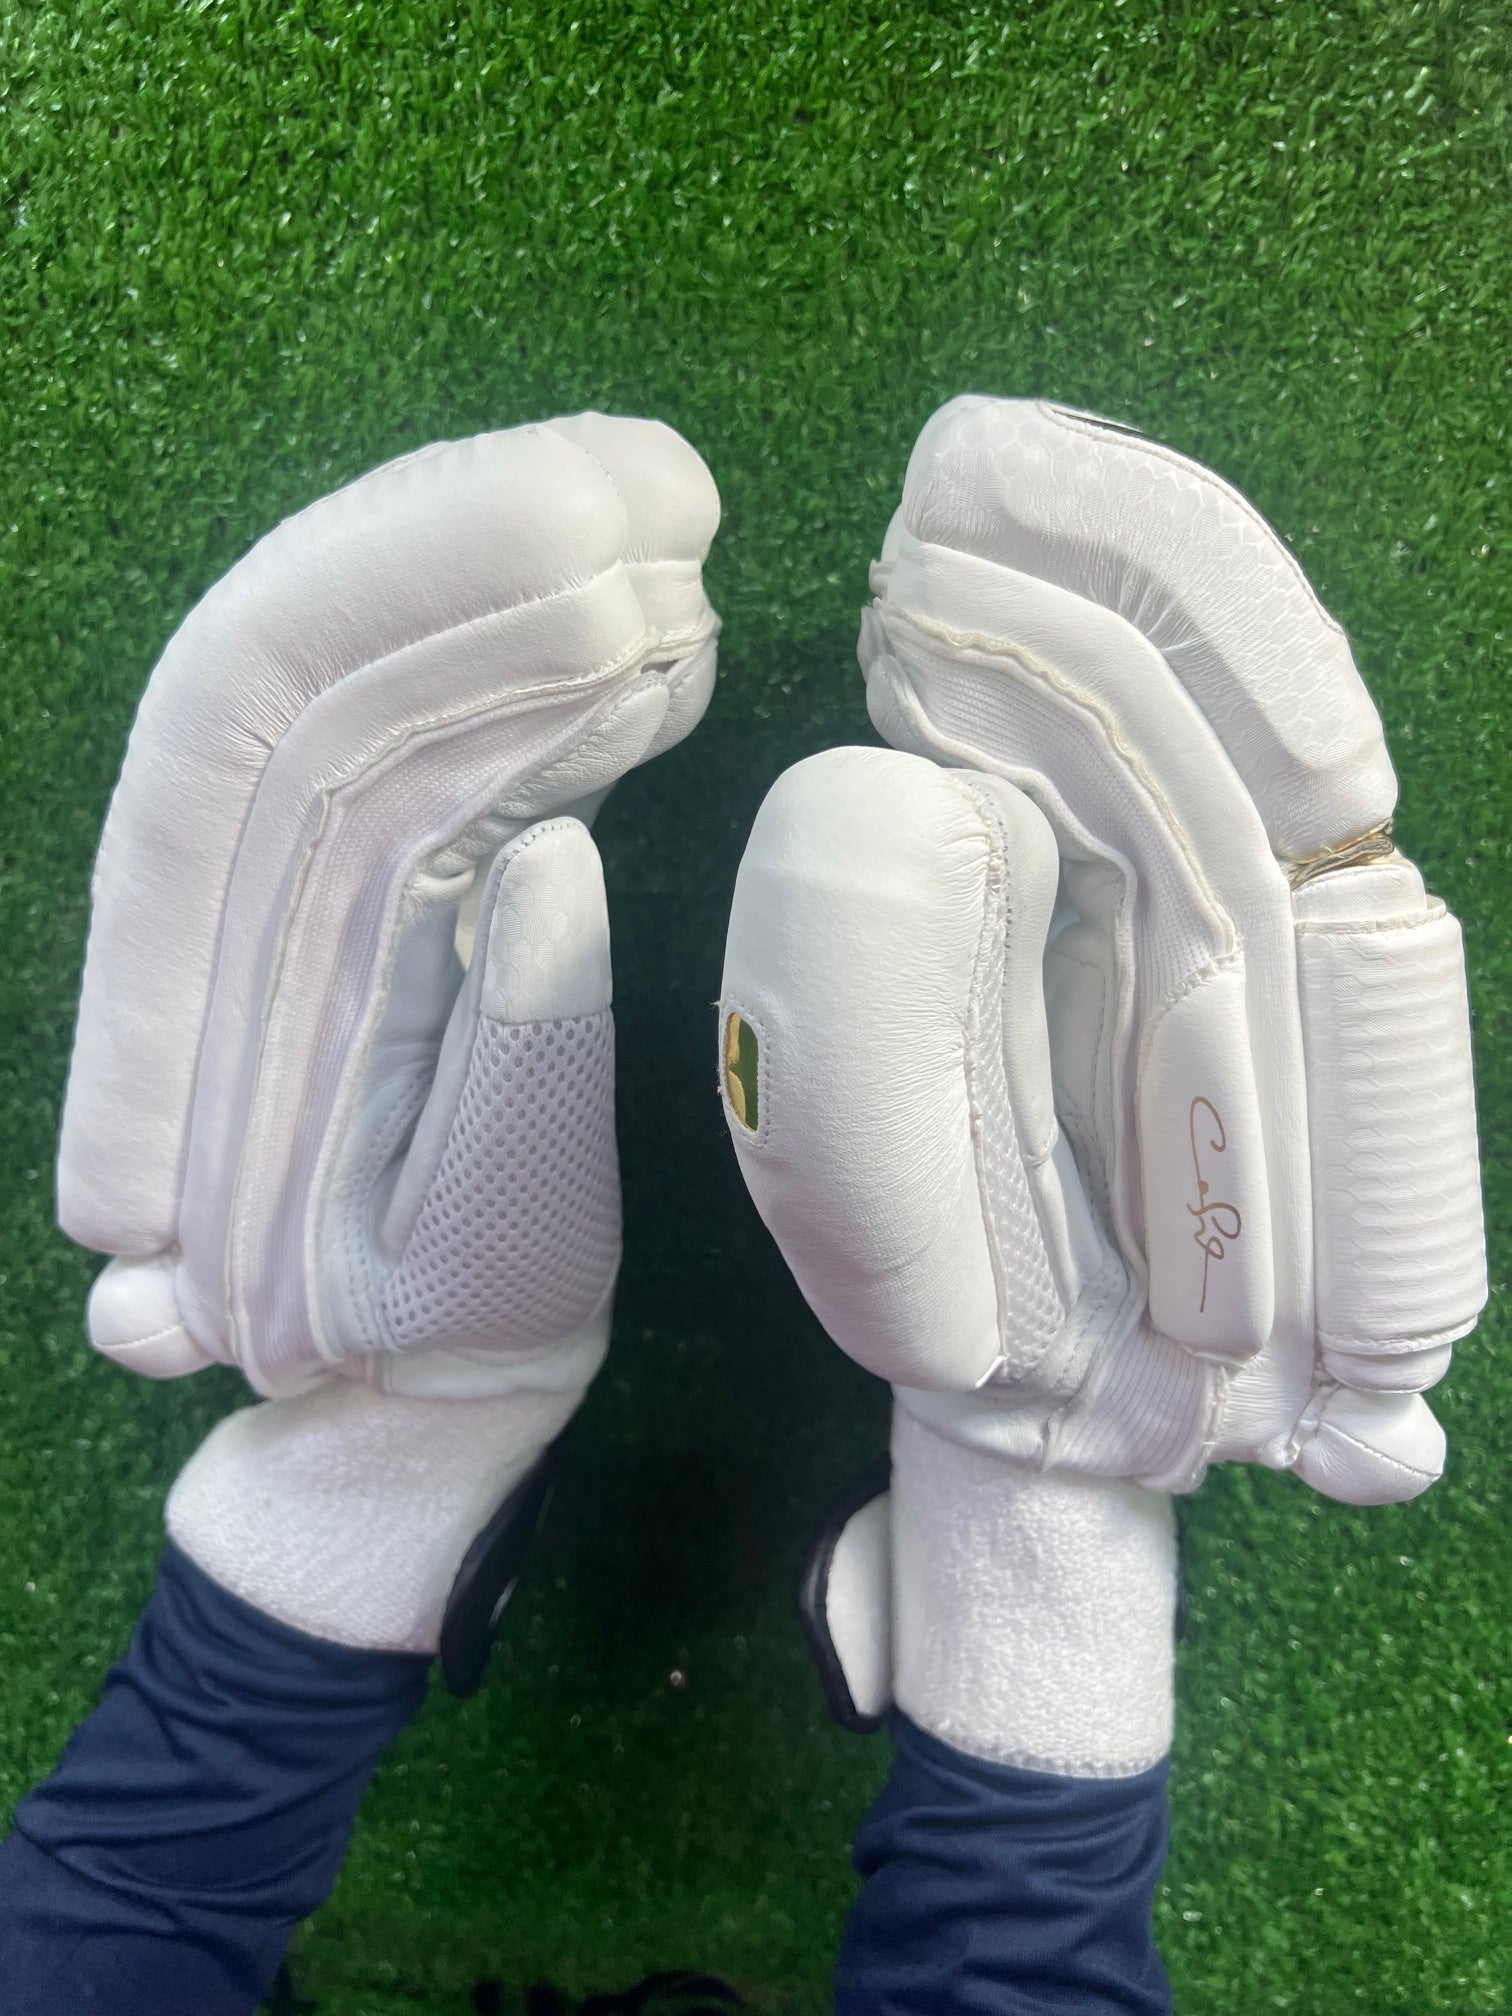 Hound T20 Batting Gloves